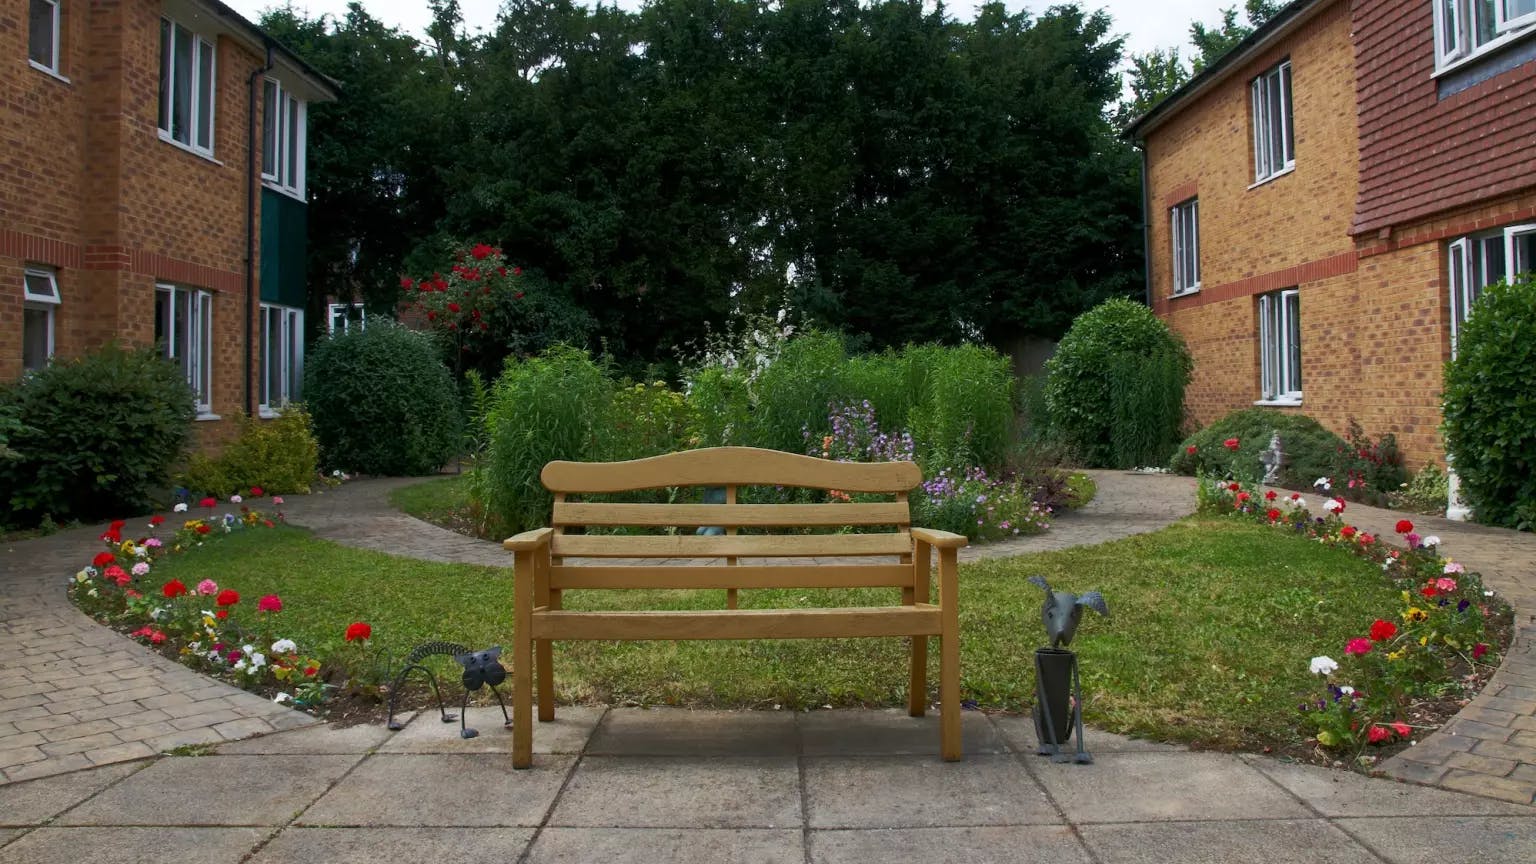 Garden of Meresworth care home in Rickmansworth, Hertfordshire